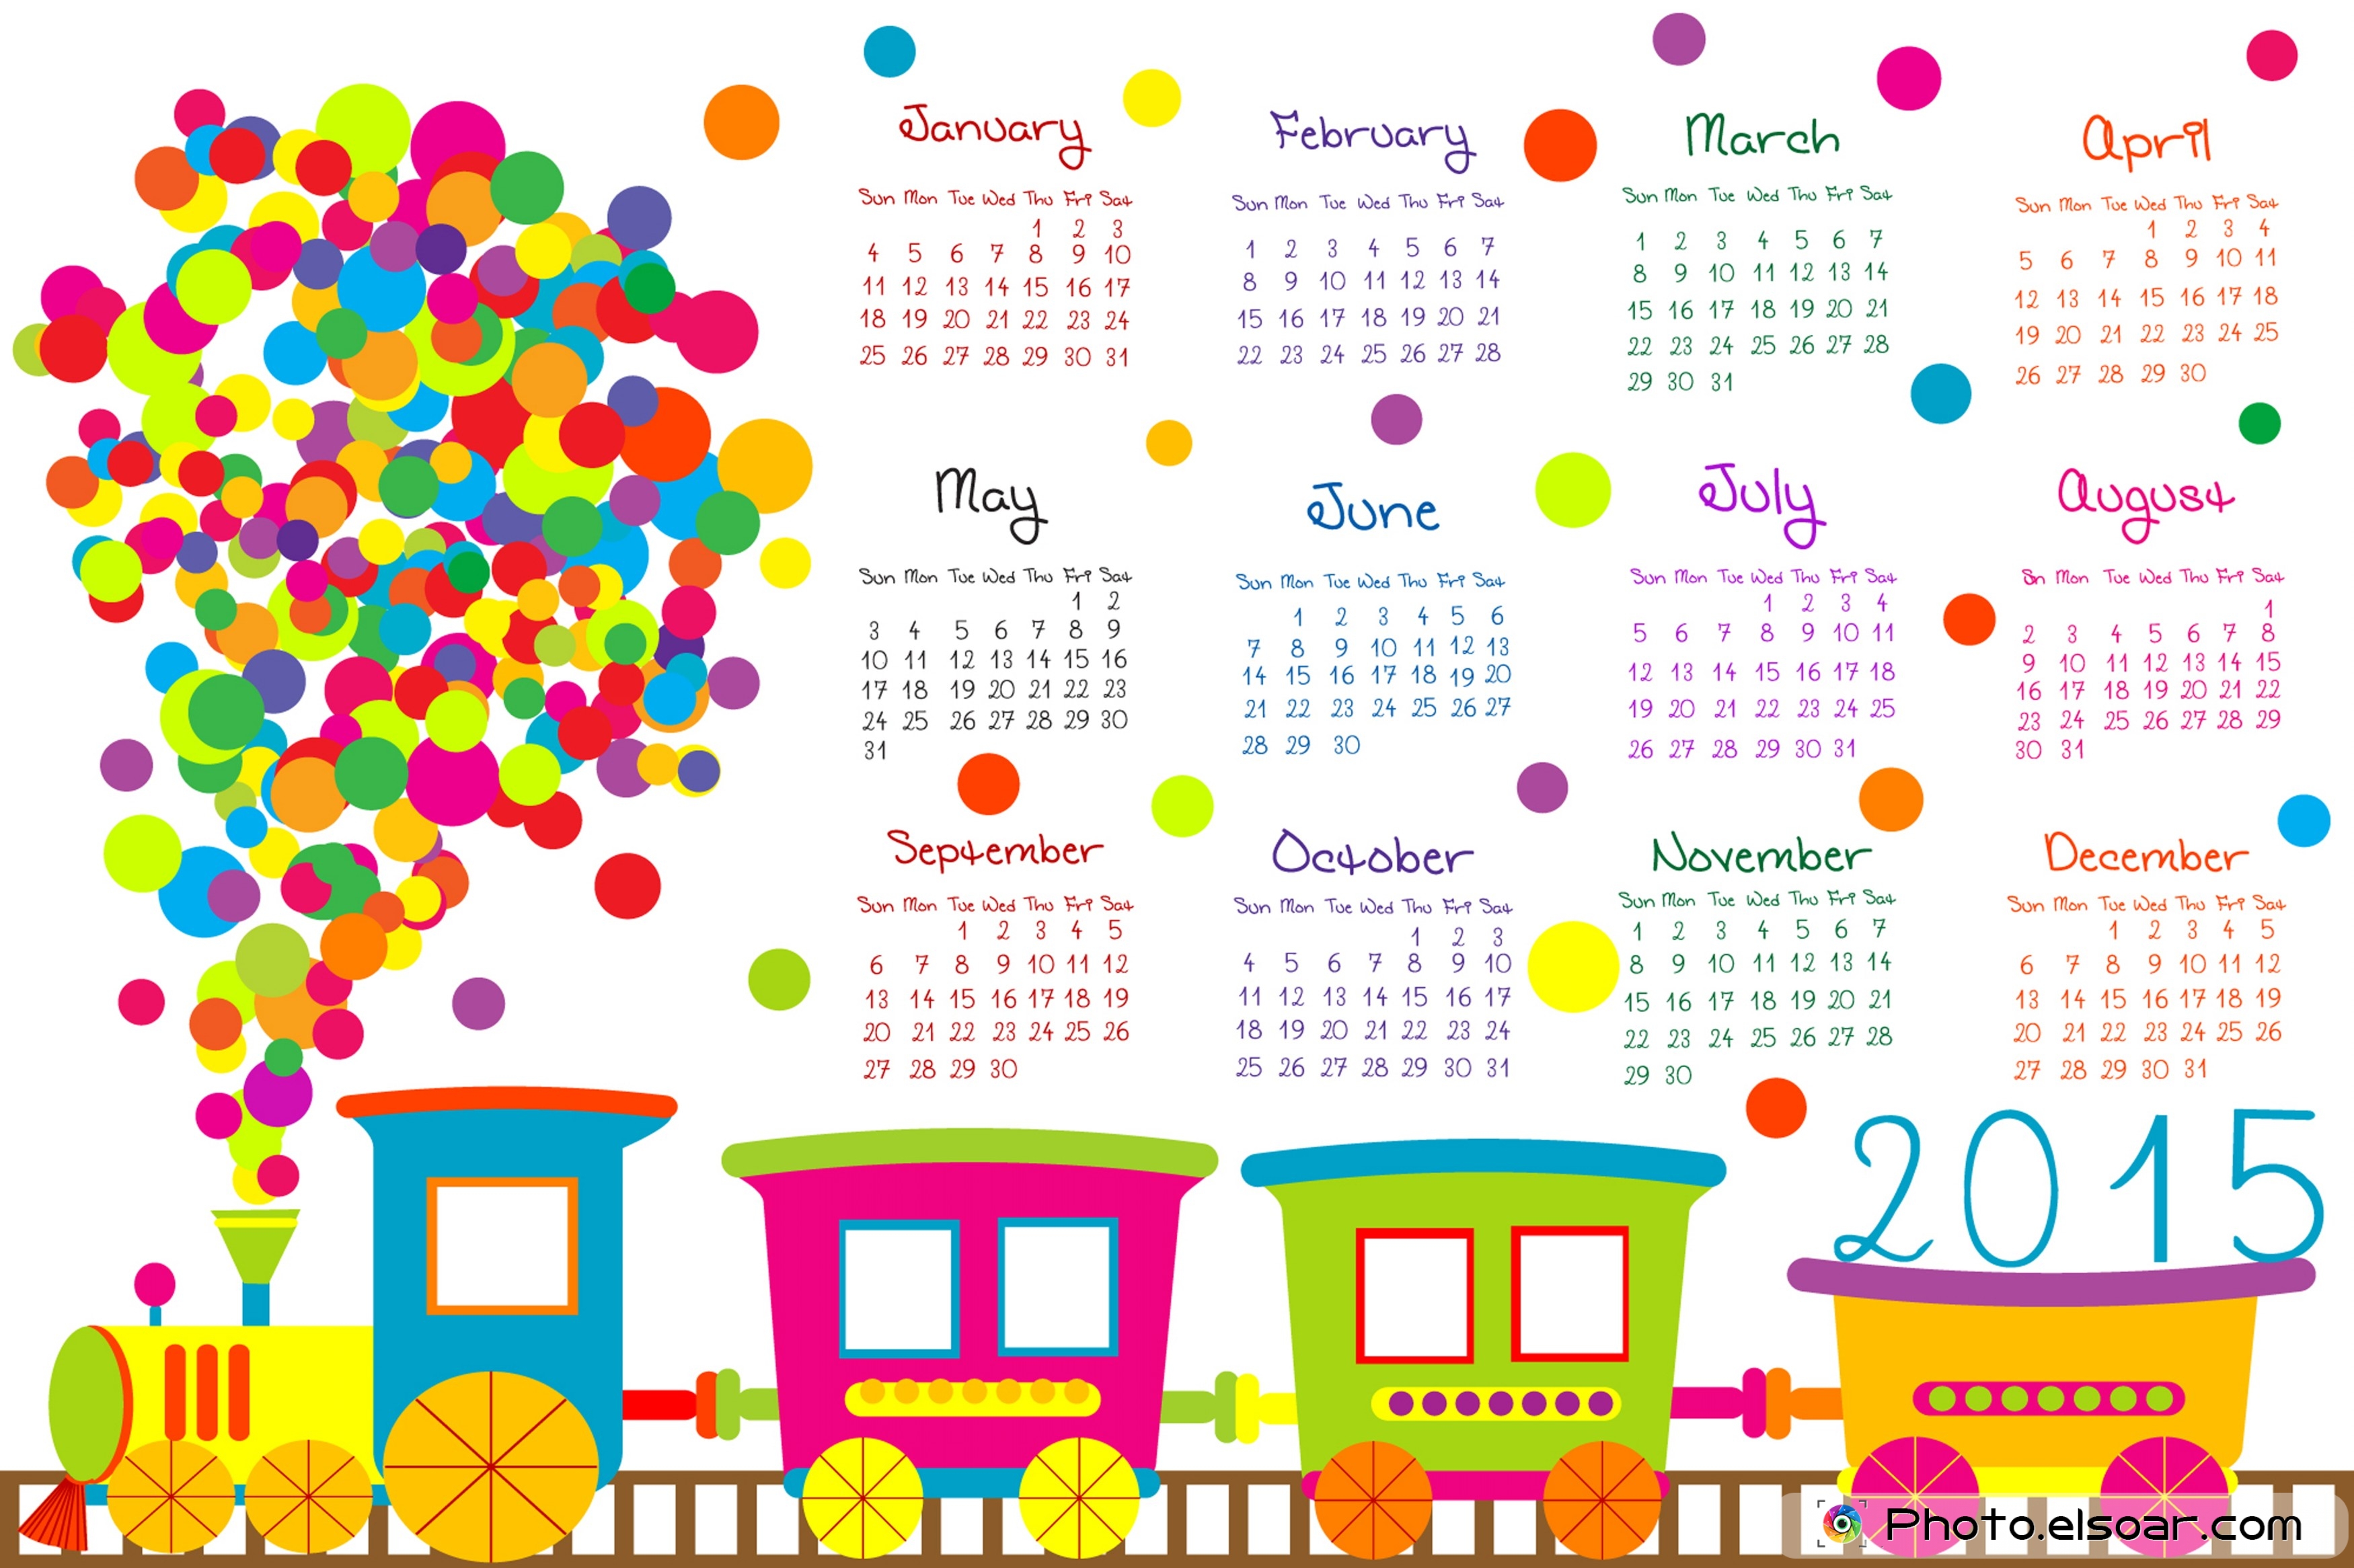 2015 Year Calendar Wallpaper Download 2015 Calendar by Month 3500x2332